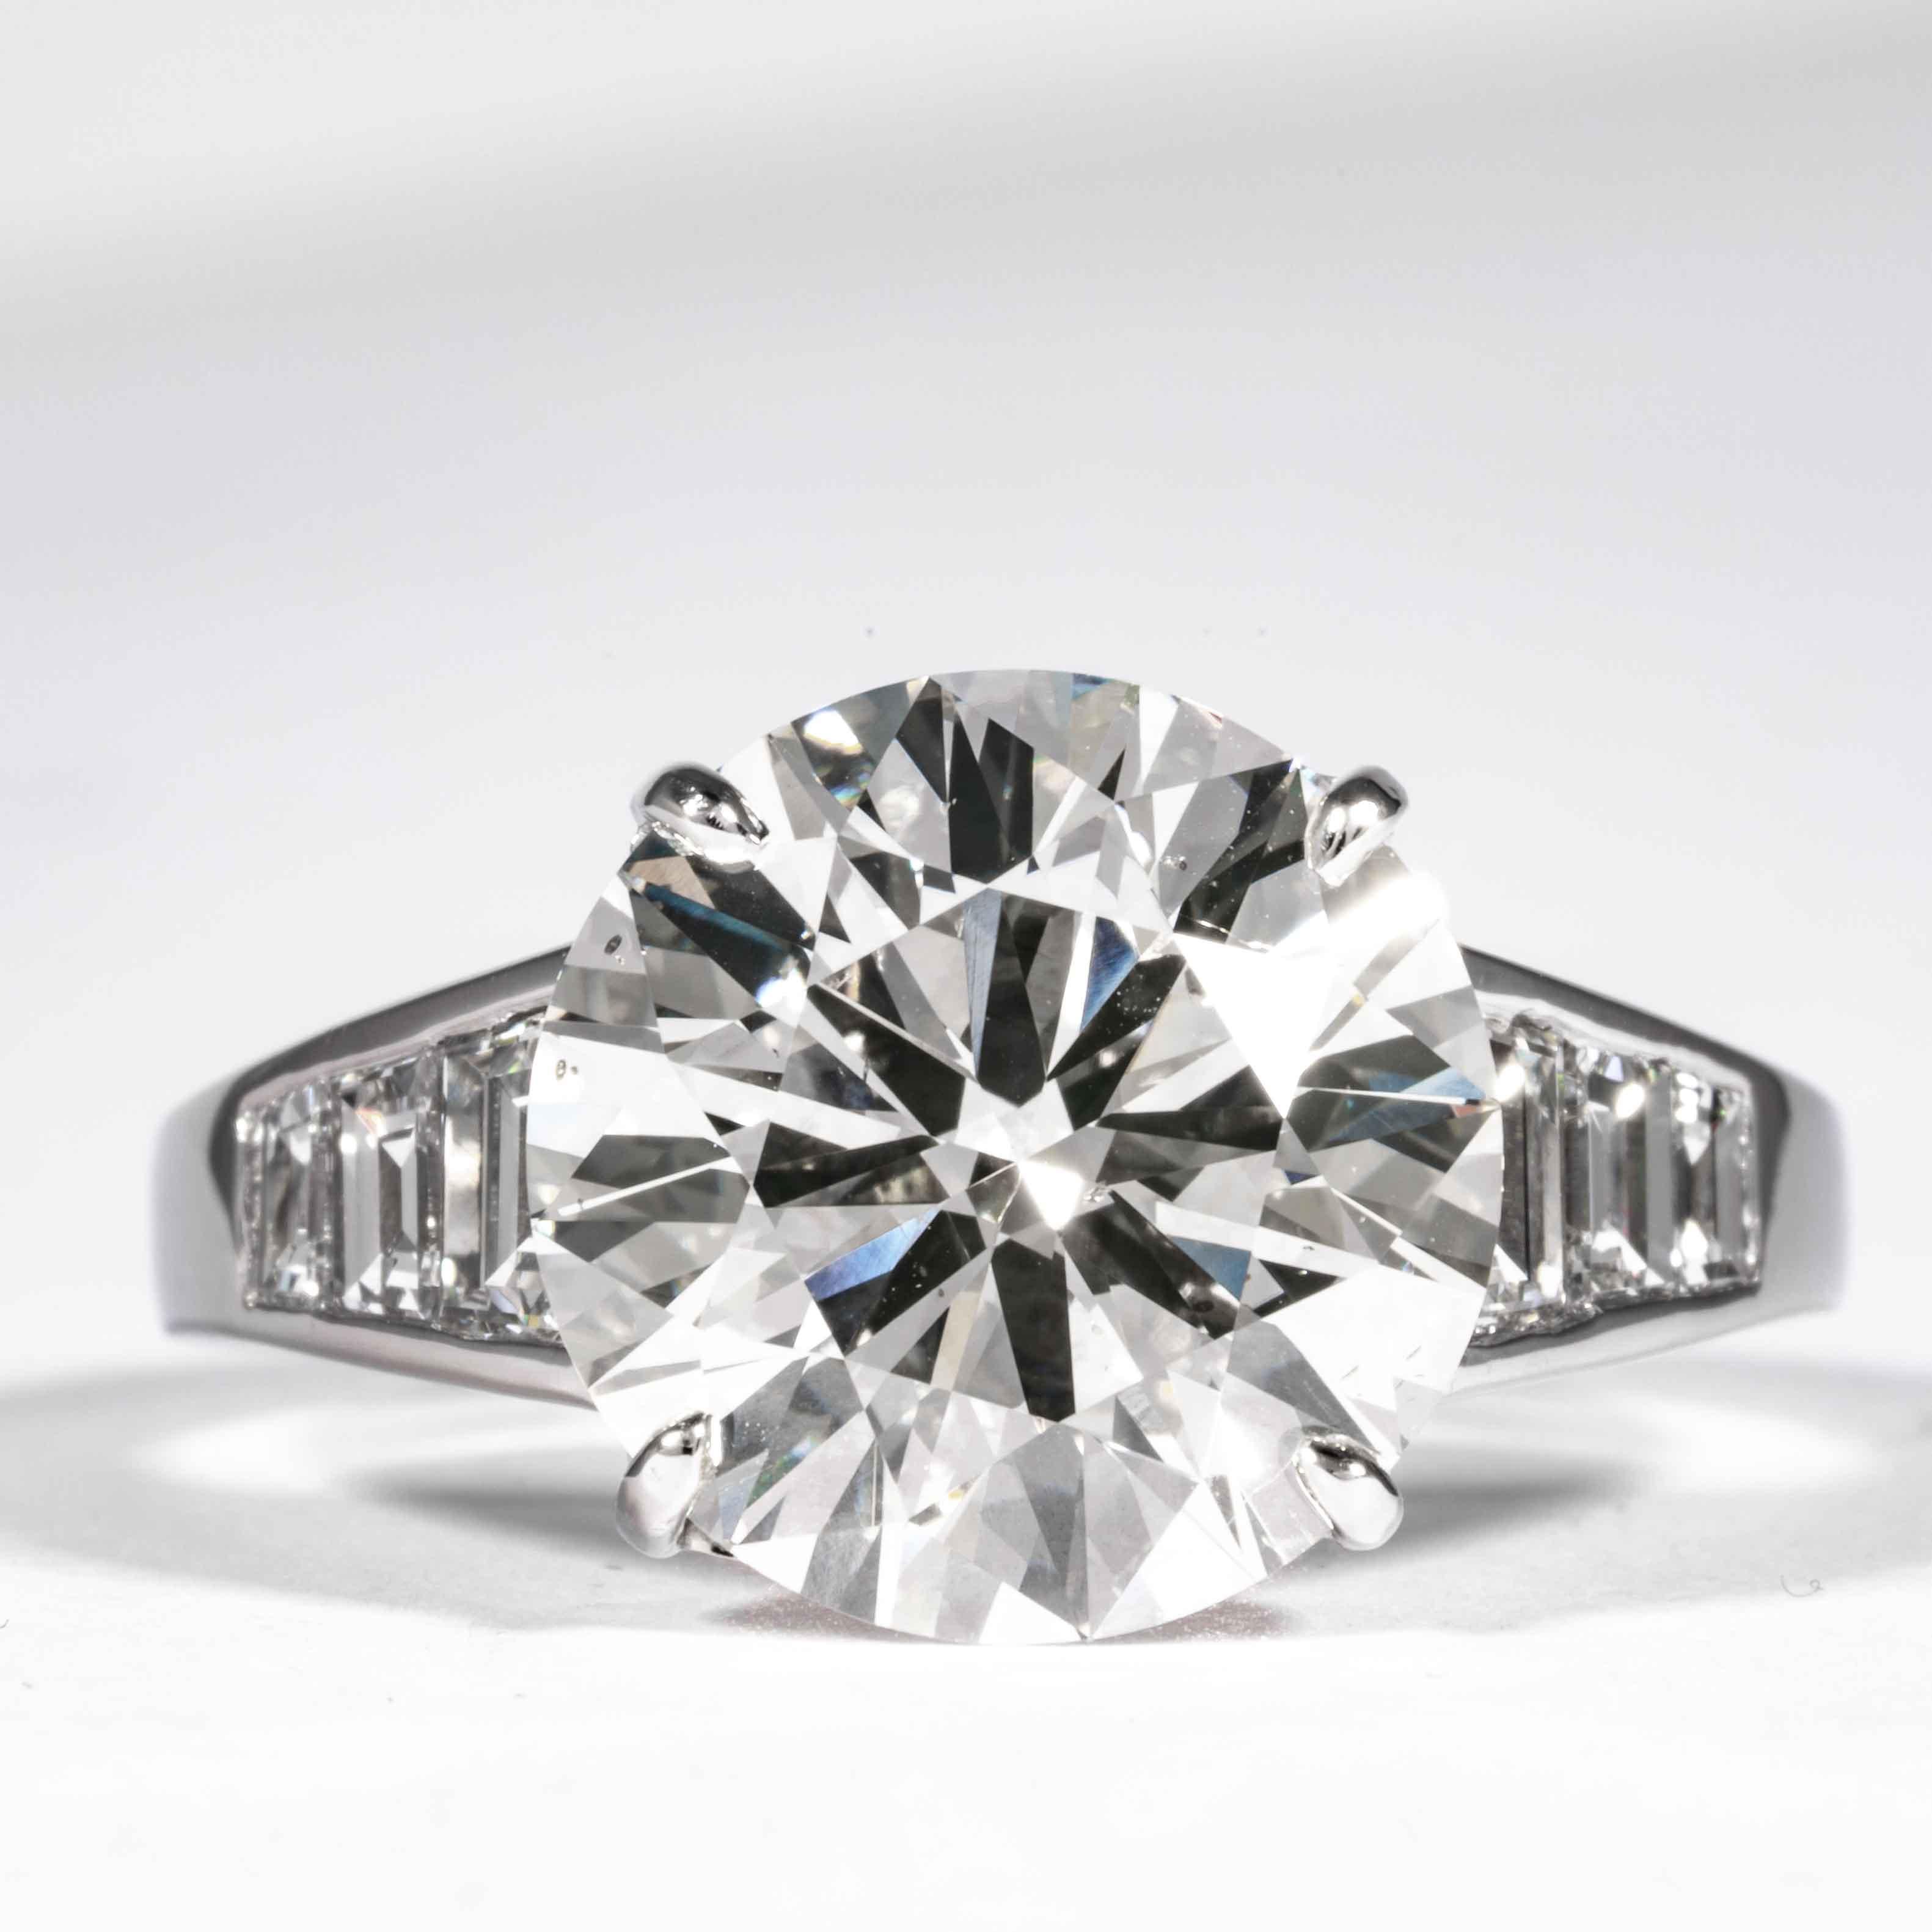 Dieser elegante und klassische Diamantring wird von Shreve, Crump & Low angeboten. Dieser 5,60 Karat GIA-zertifizierte J SI1 runde Diamant im Brillantschliff mit den Maßen 11,60 x 11,67 x 6,88 mm ist in einem handgefertigten Platin- und Diamantring